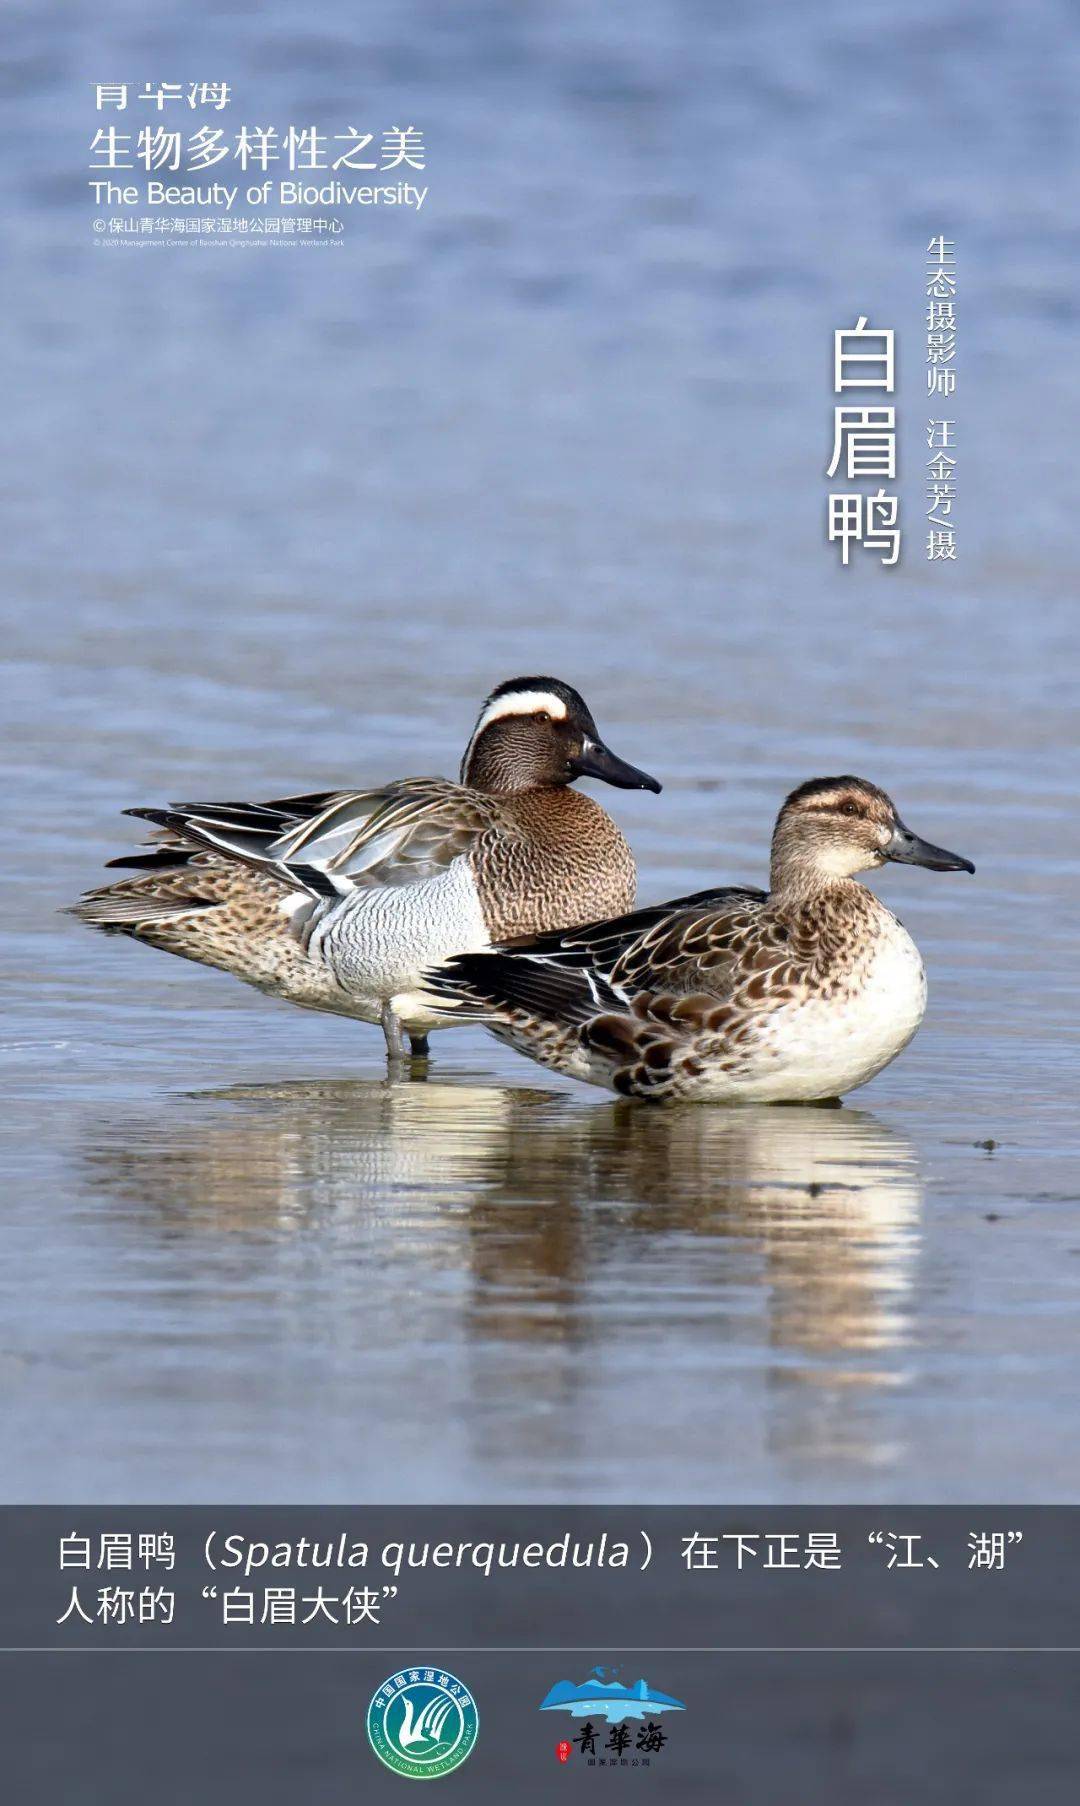 【青华海生物多样性之美】白眉鸭:在下正是江,湖人称的白眉大侠